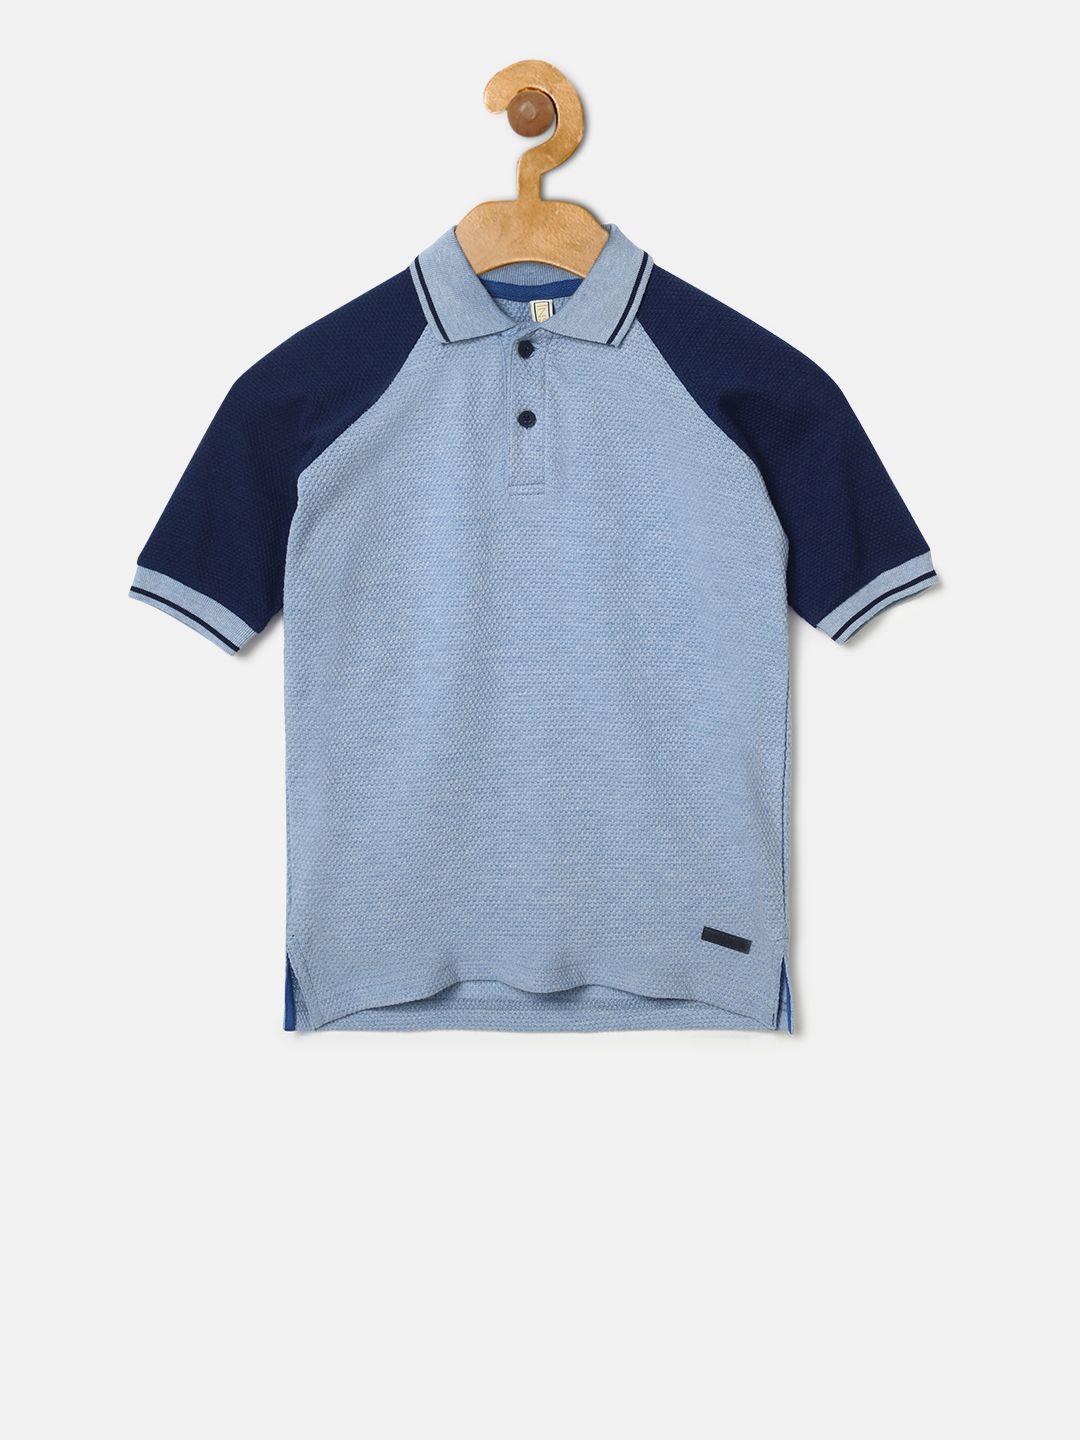 instafab boys blue colourblocked polo collar t-shirt